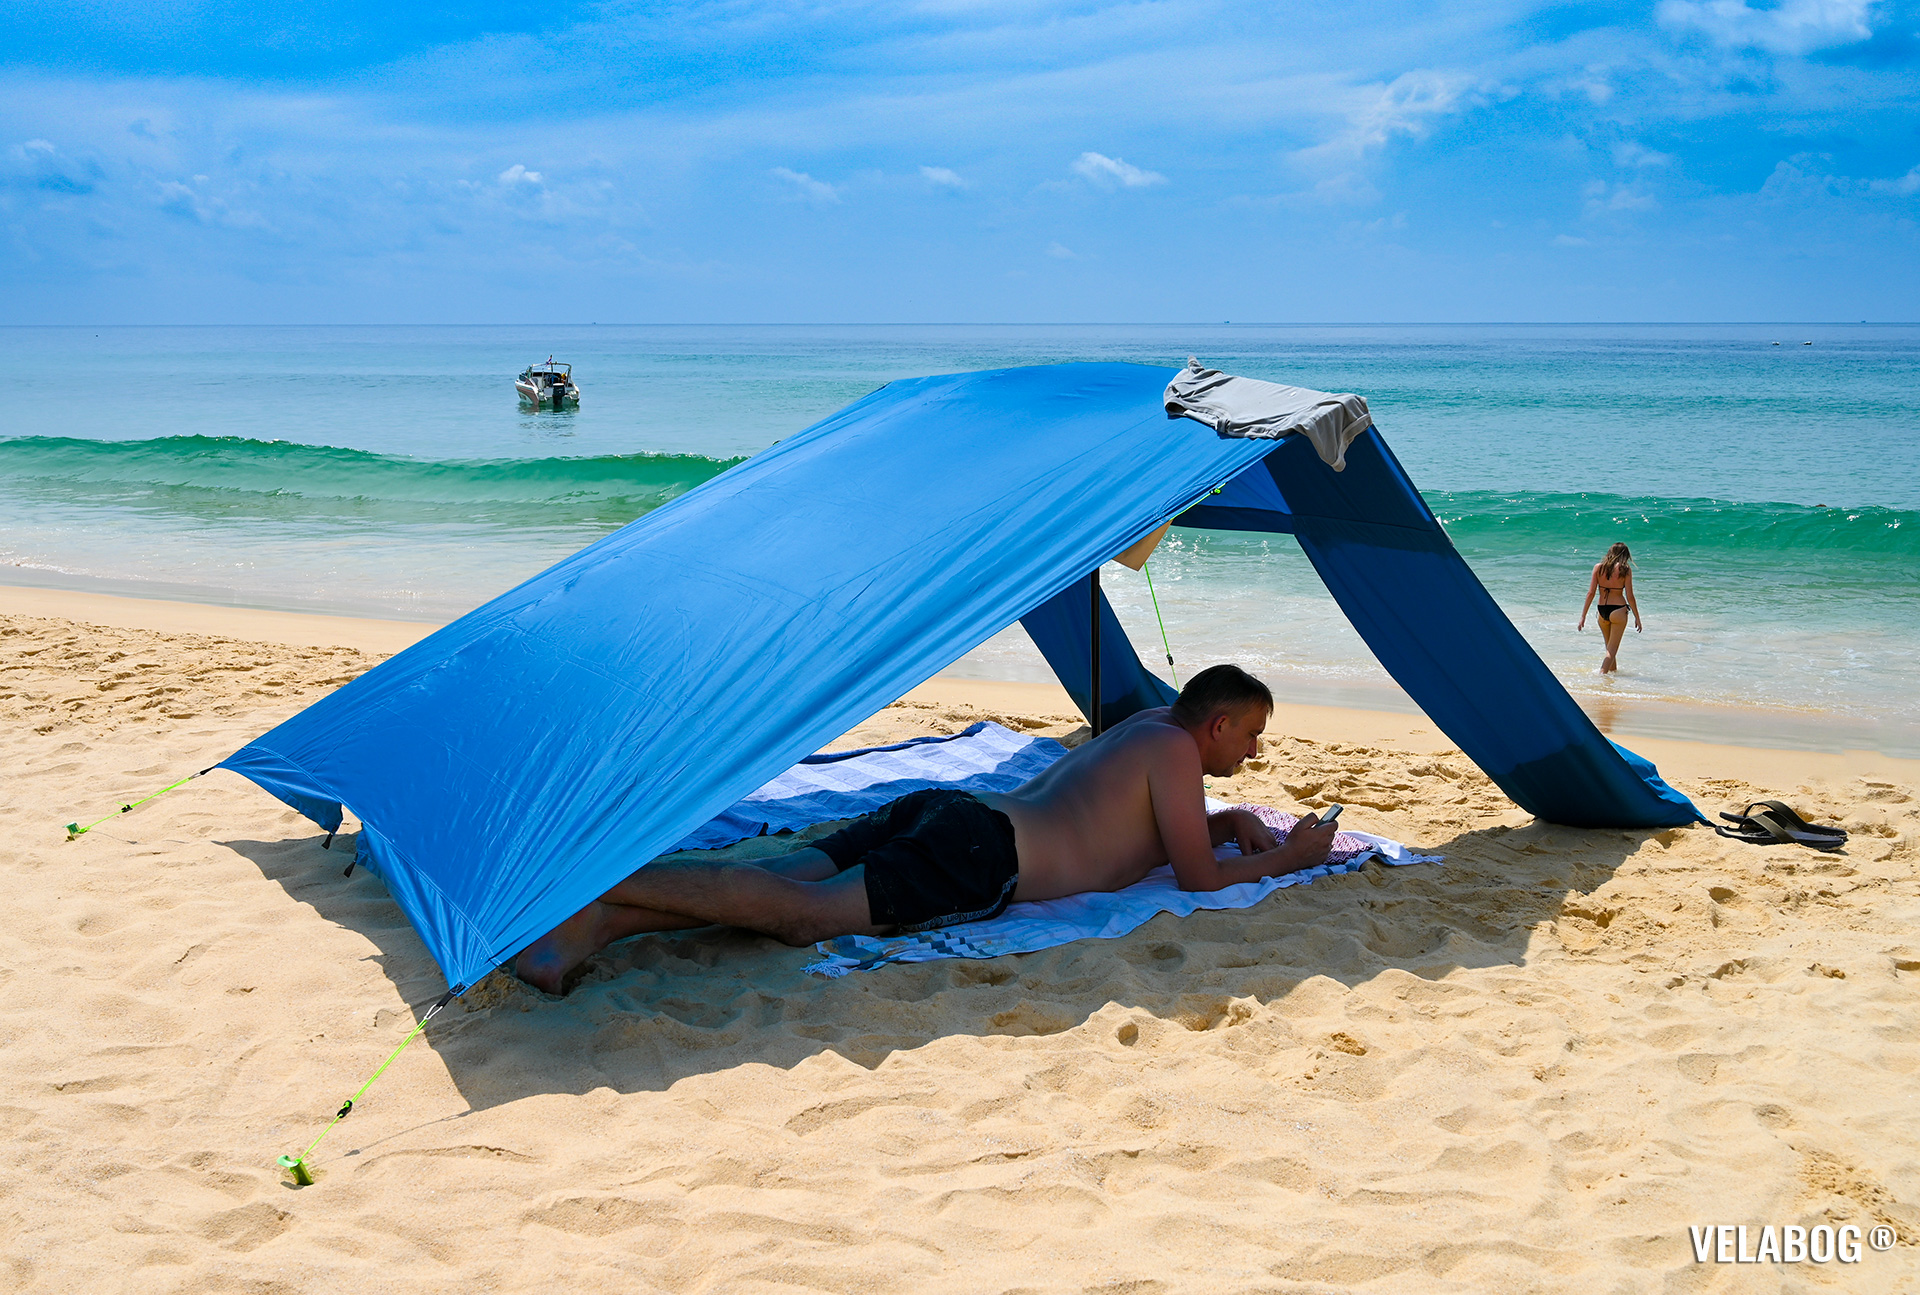 Tenda da spiaggia Velabog Breeze, blu. Ariosa protezione dal sole sulla spiaggia anche senza vento. Persone.